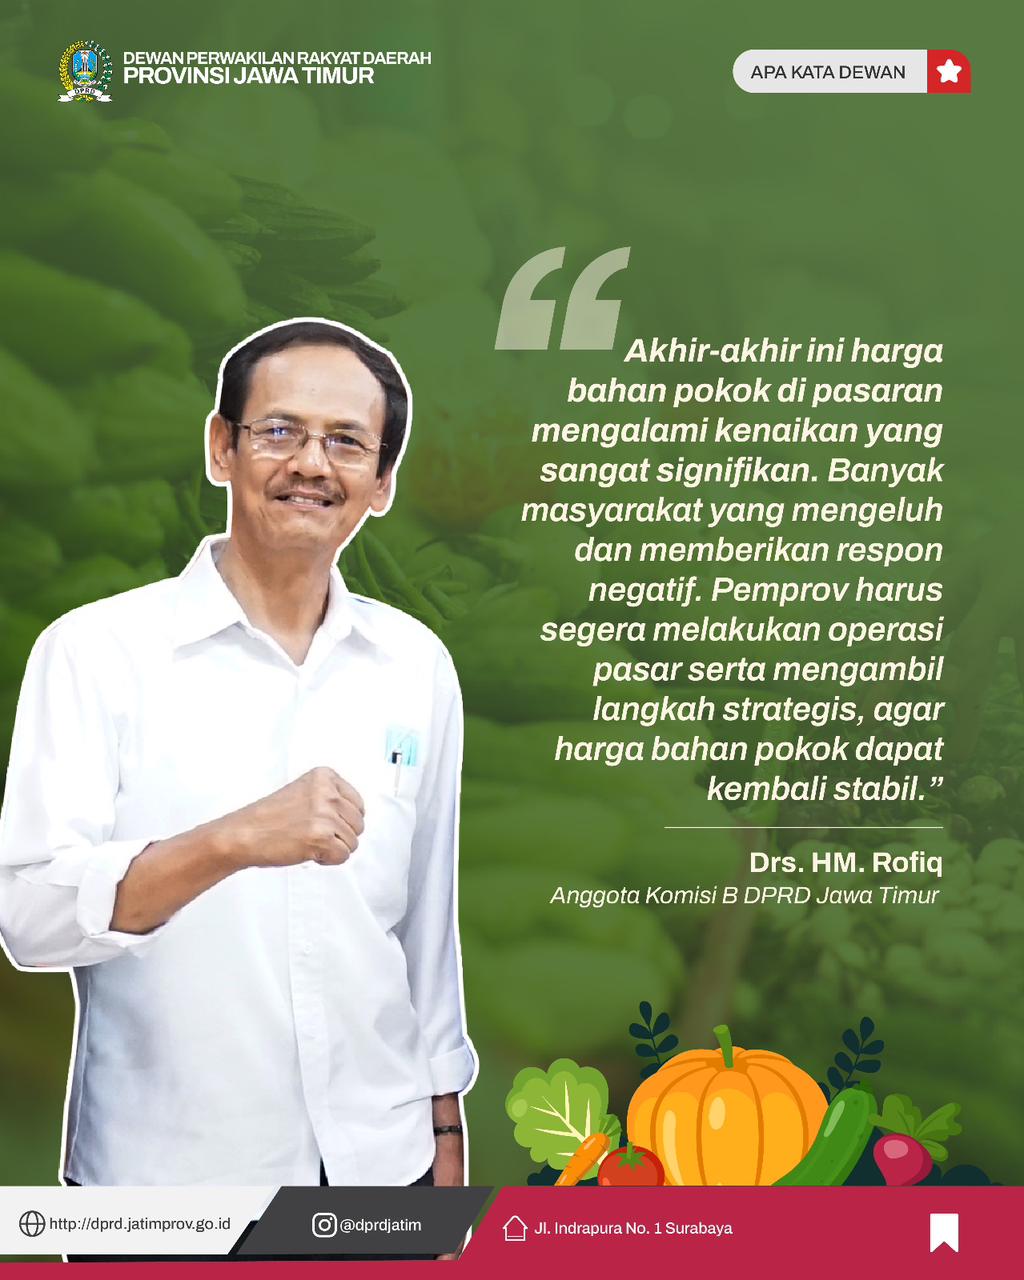 MH Rofiq Desak Pemprov Jatim Segera Stabilkan Harga Kebutuhan Pokok Di Pasaran